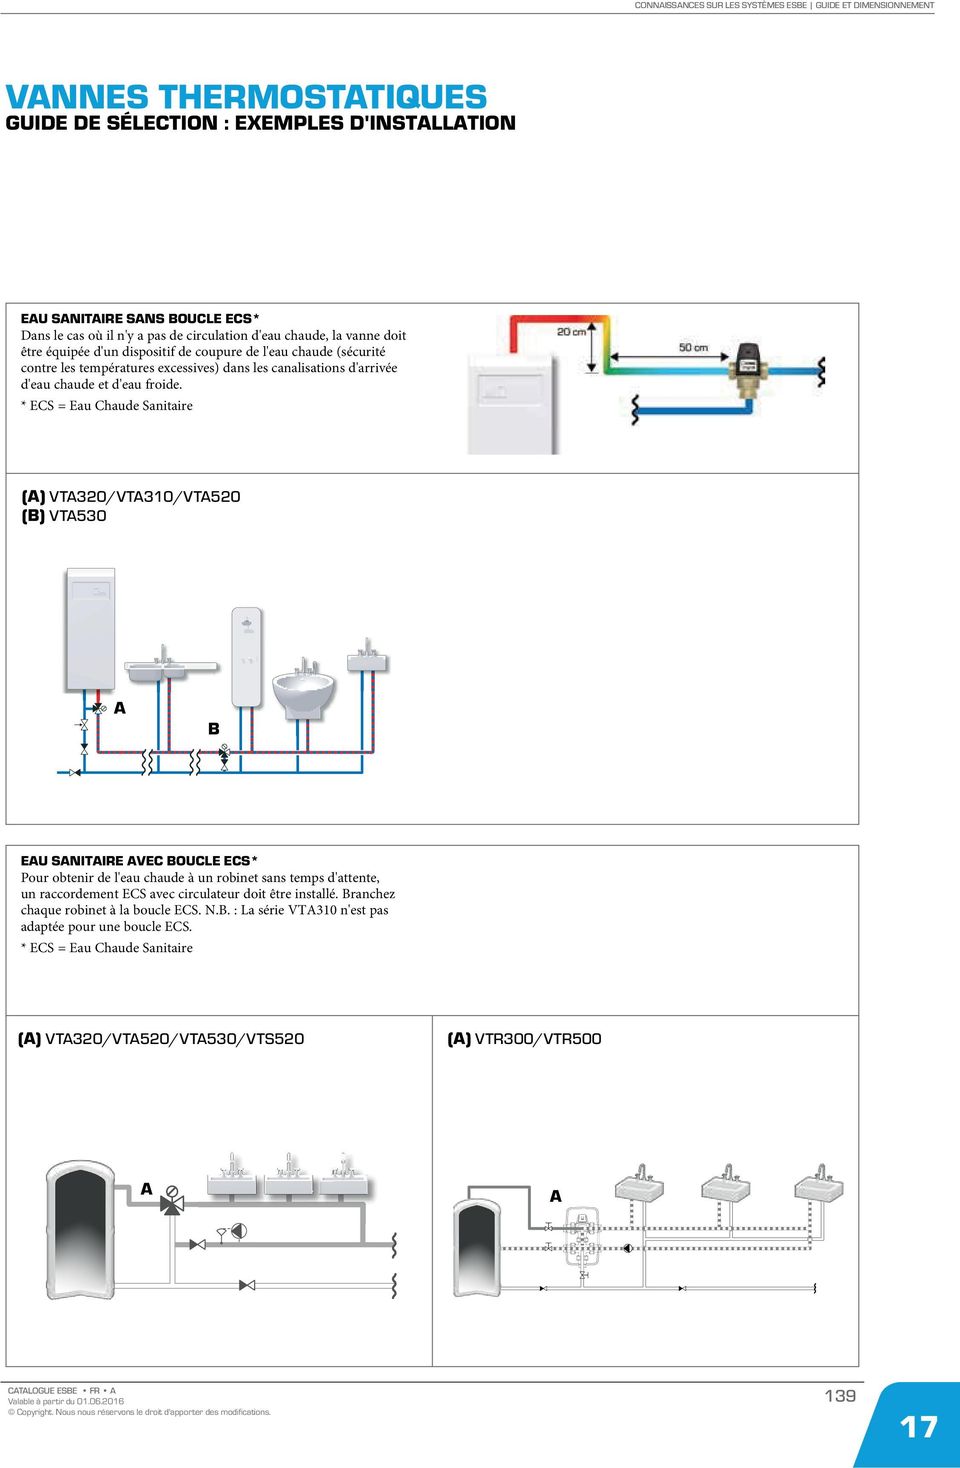 * ECS = Eau Chaude Sanitaire () VT320/VT310/VT520 () VT530 EU SNITIRE VEC OUCLE ECS* Pour obtenir de l'eau chaude à un robinet sans temps d'attente, un raccordement ECS avec circulateur